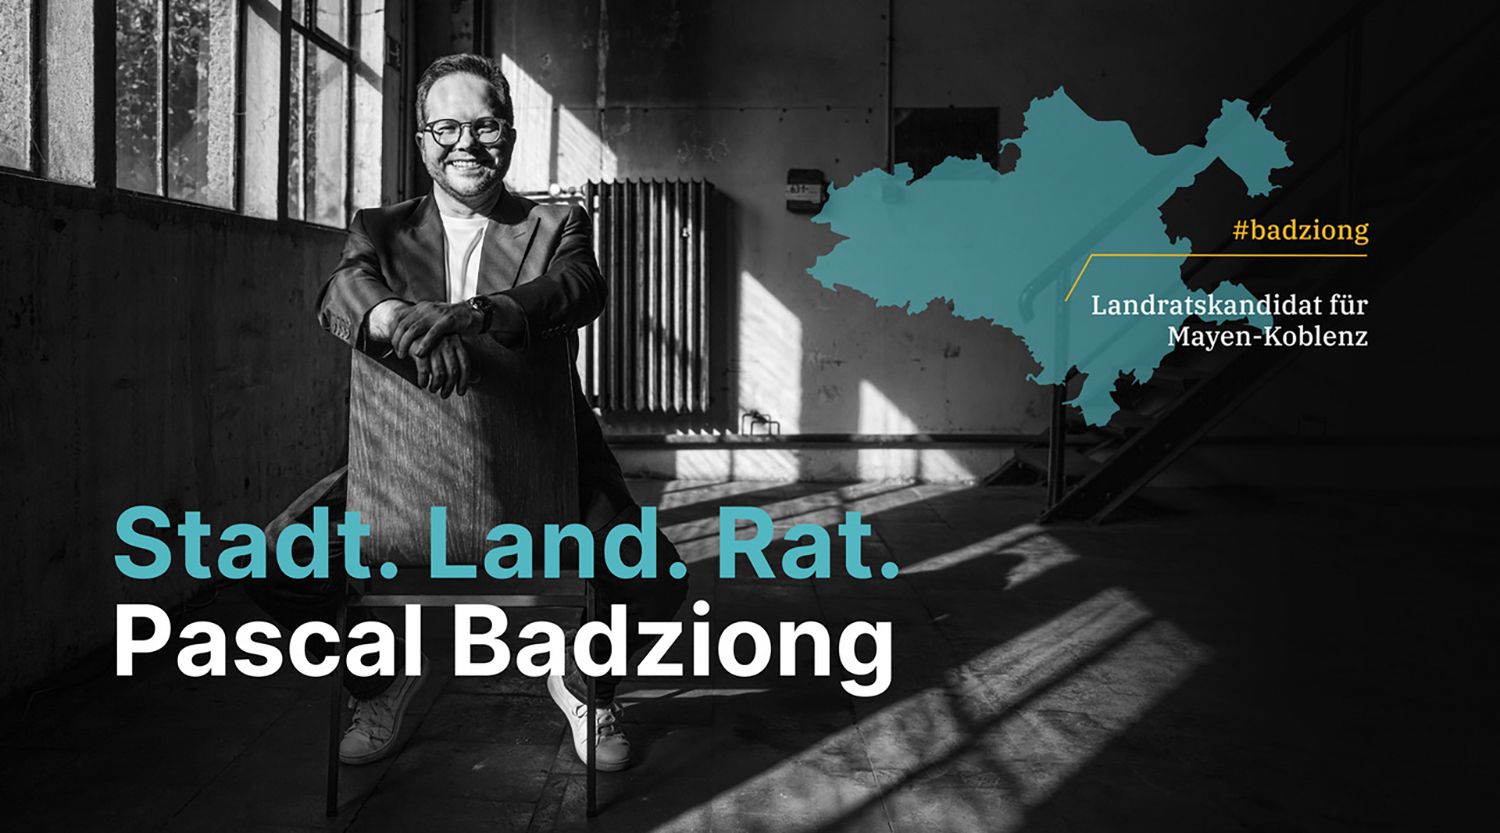 Pascal Badziong möchte Landrat werden